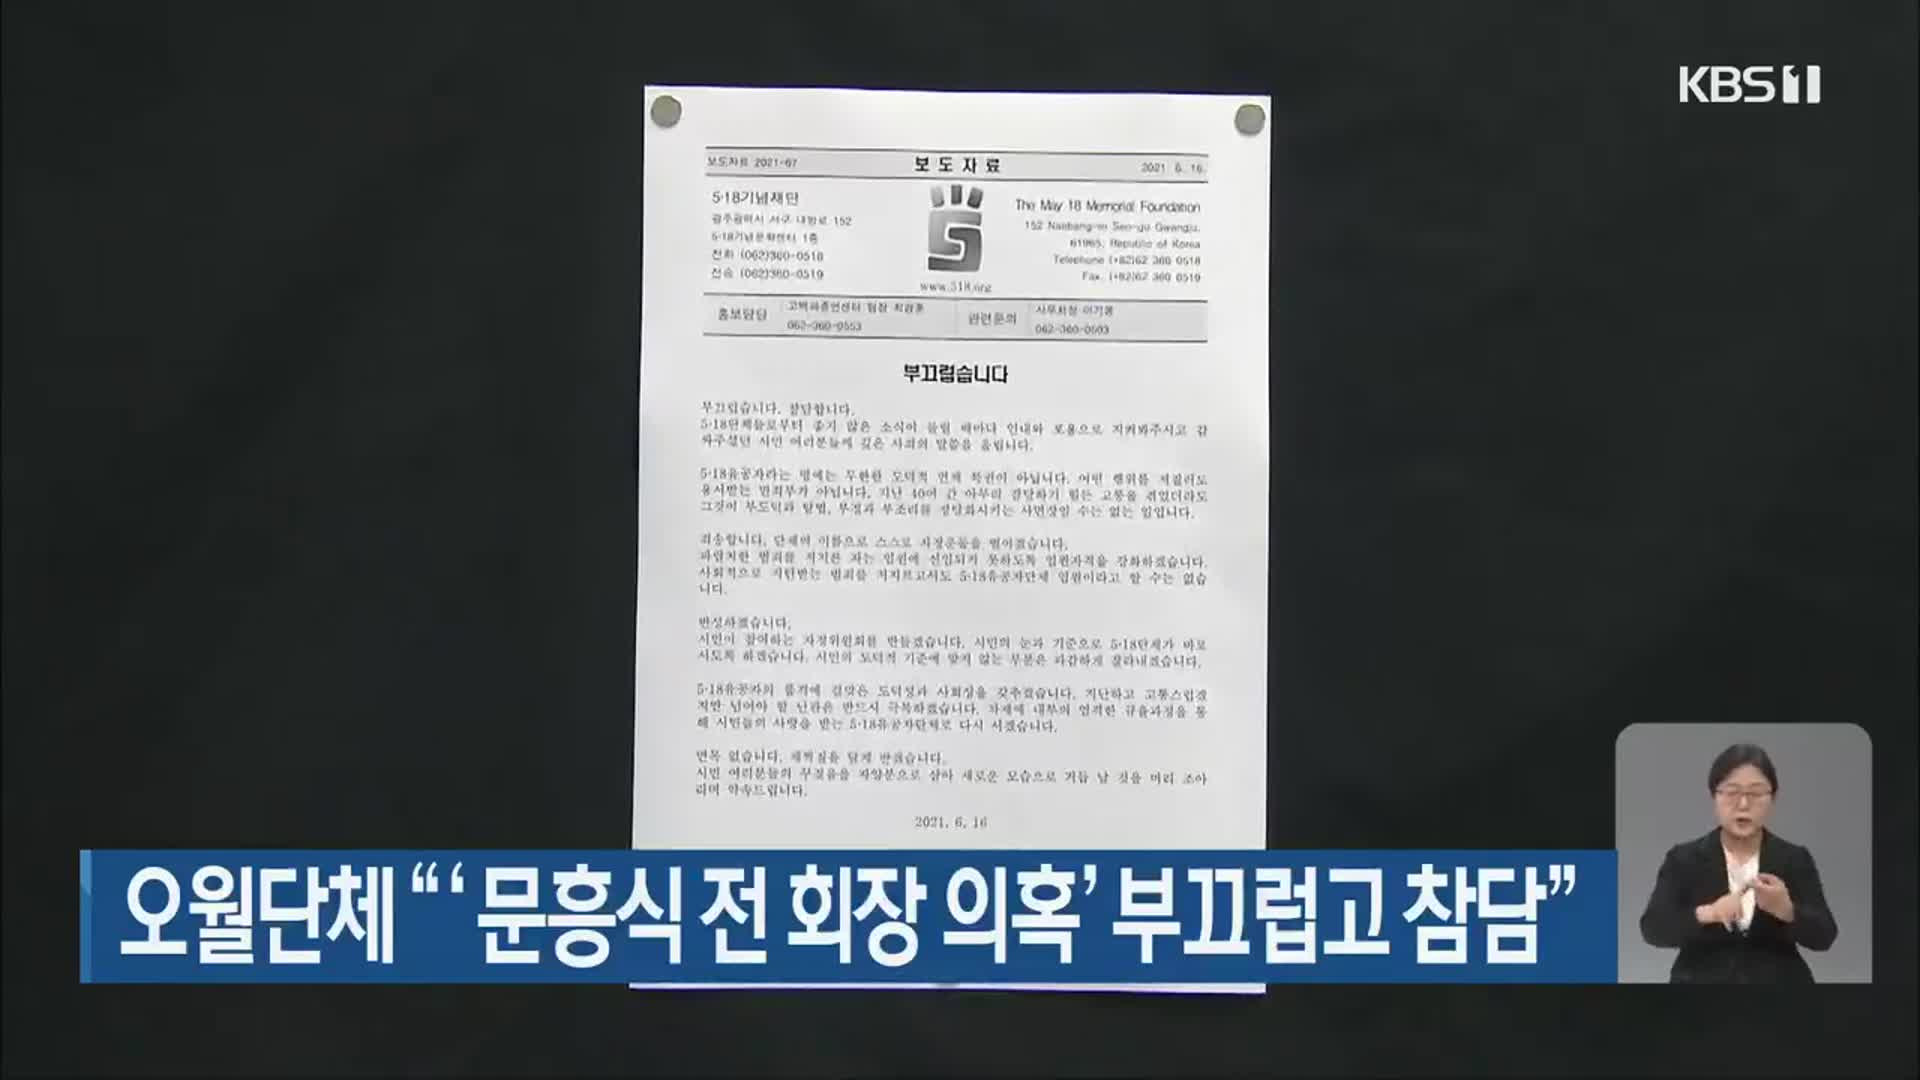 오월단체 “‘문흥식 전 회장 의혹’ 부끄럽고 참담”